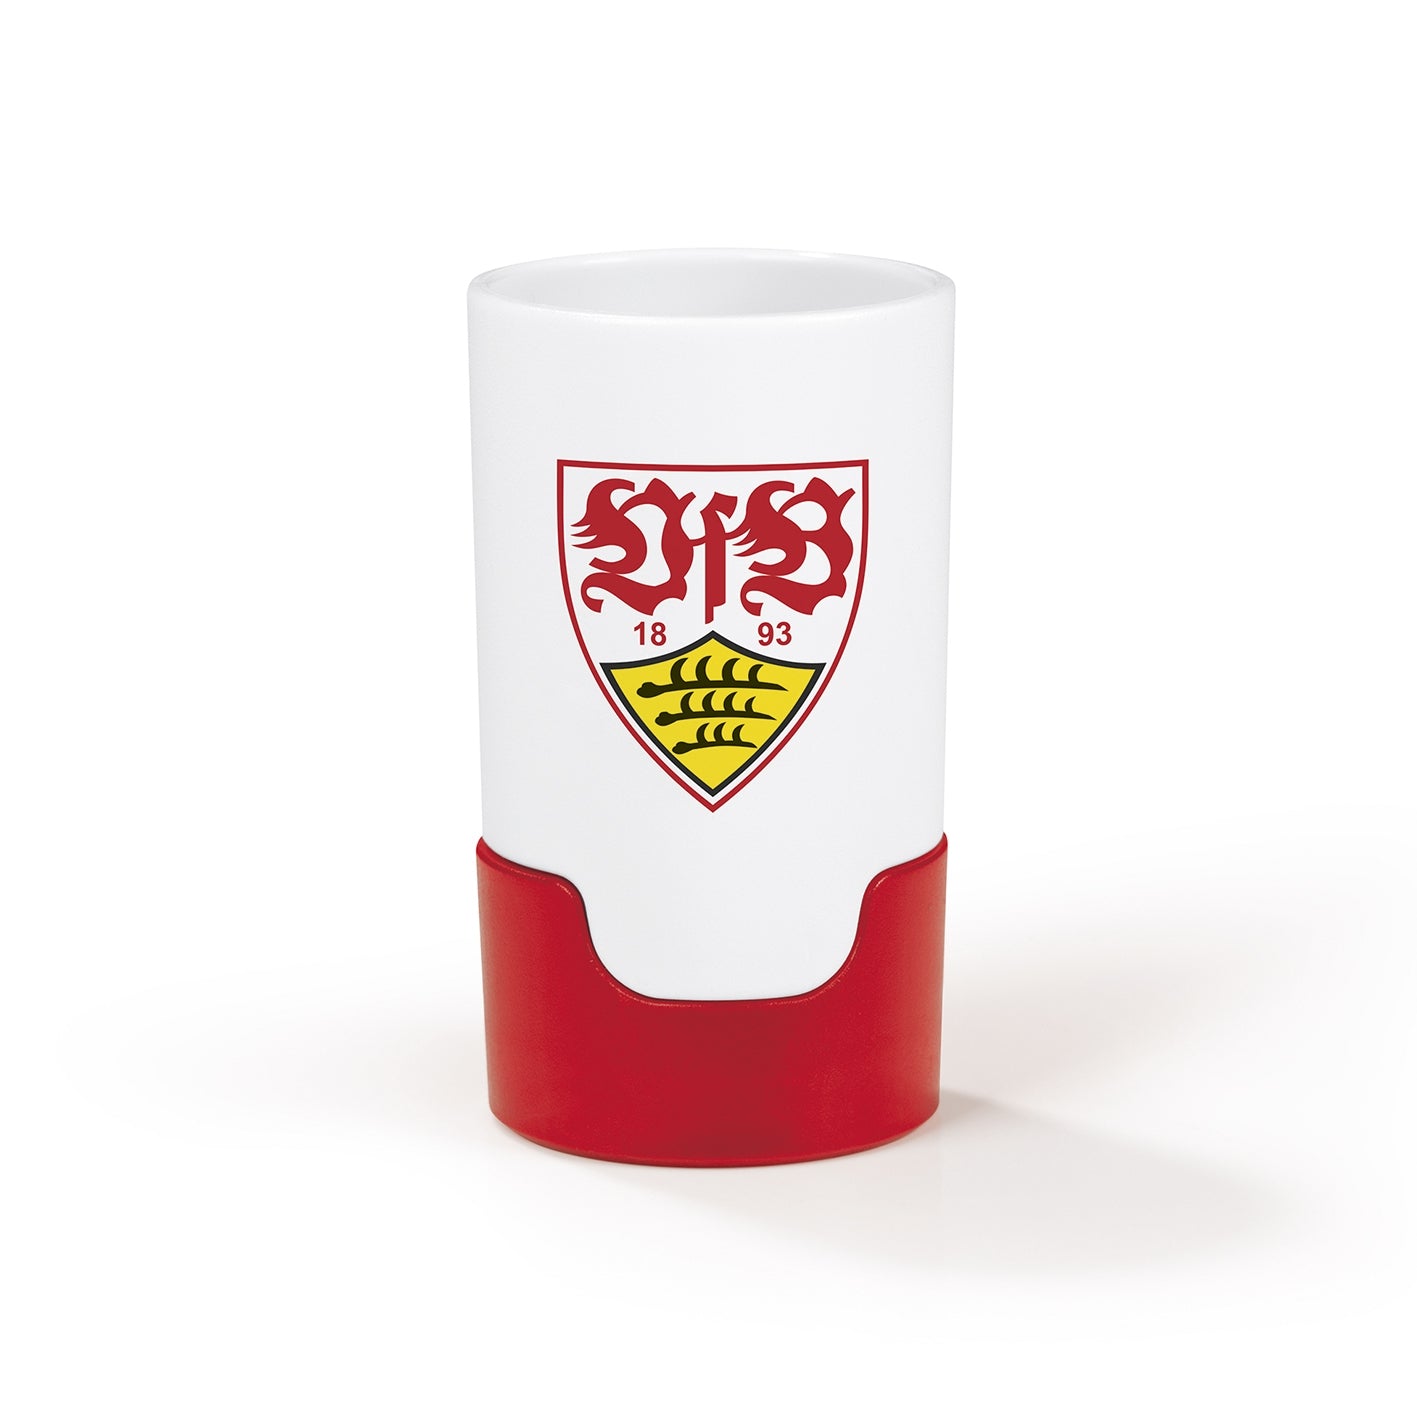 Bier-Aufbereiter im VfB Stuttgart-Design